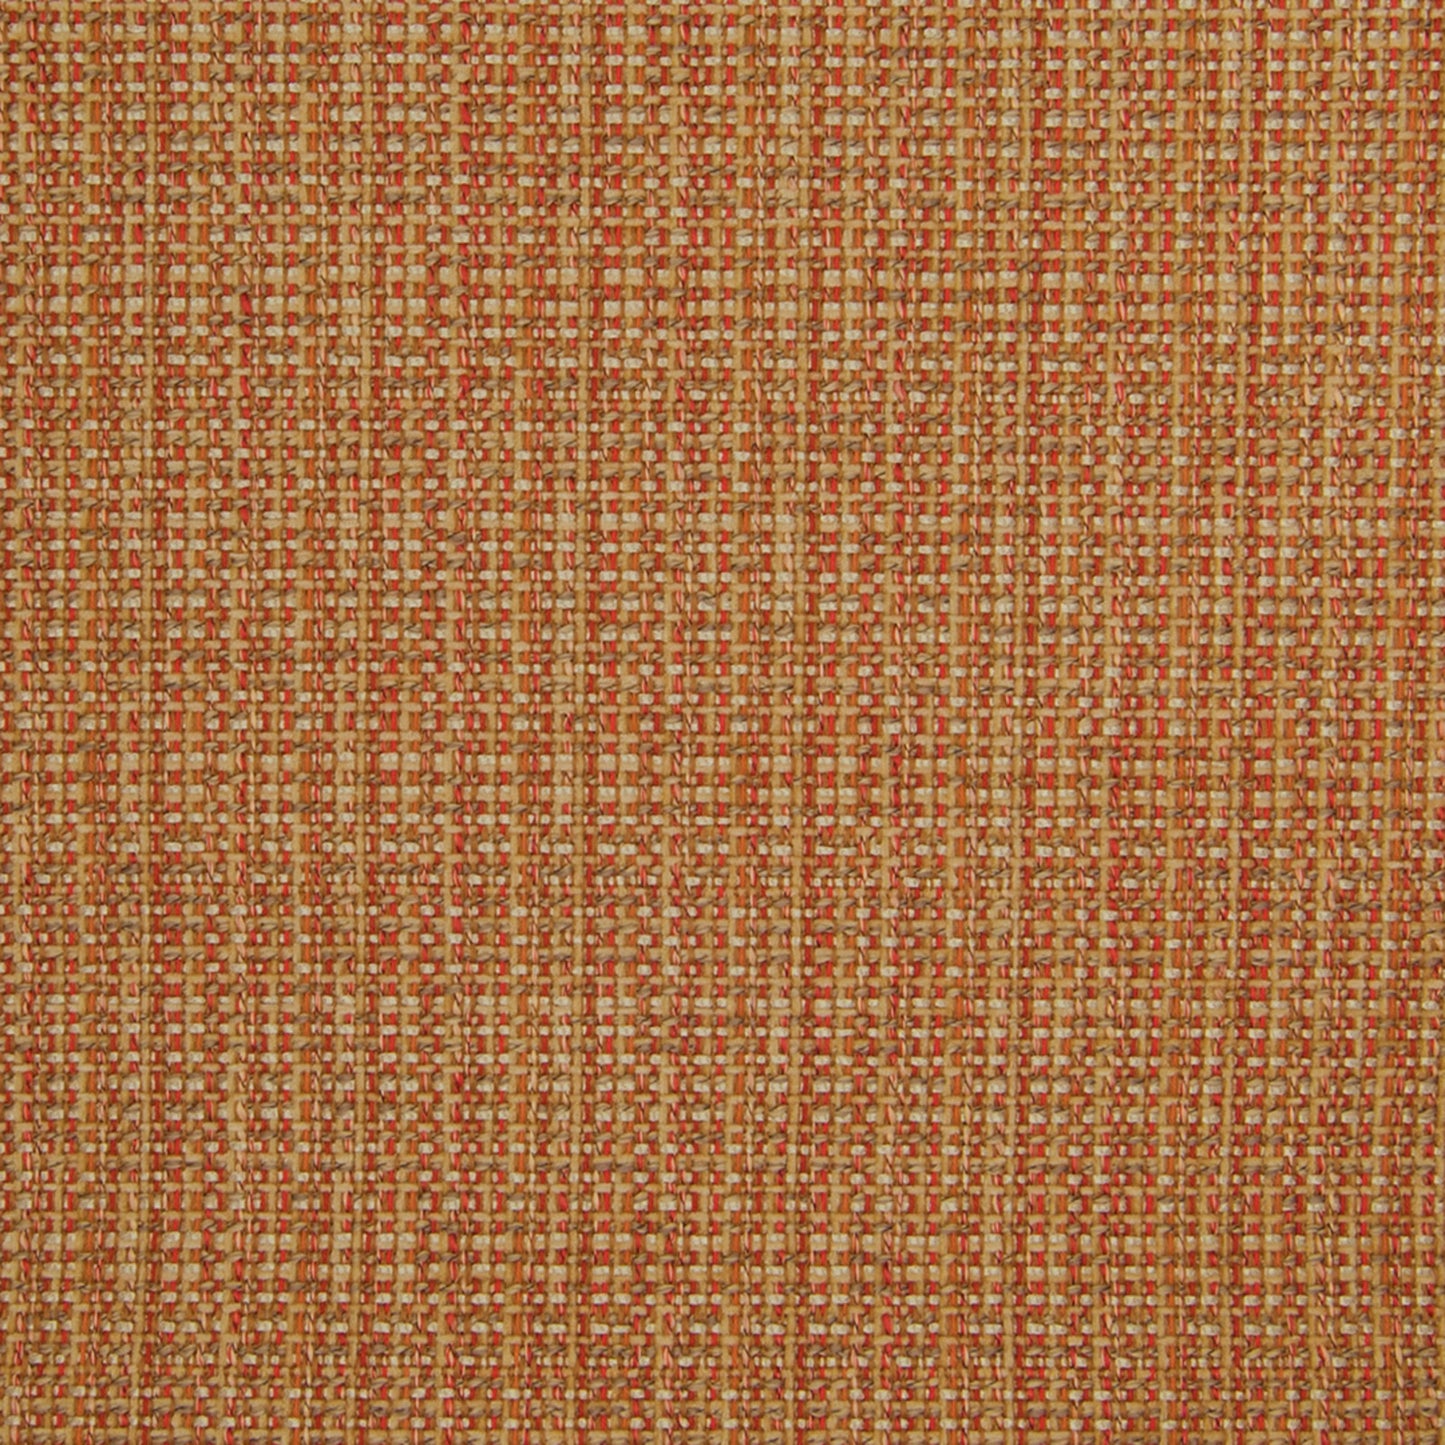 Purchase Greenhouse Fabric B4989 Tuscan Sun